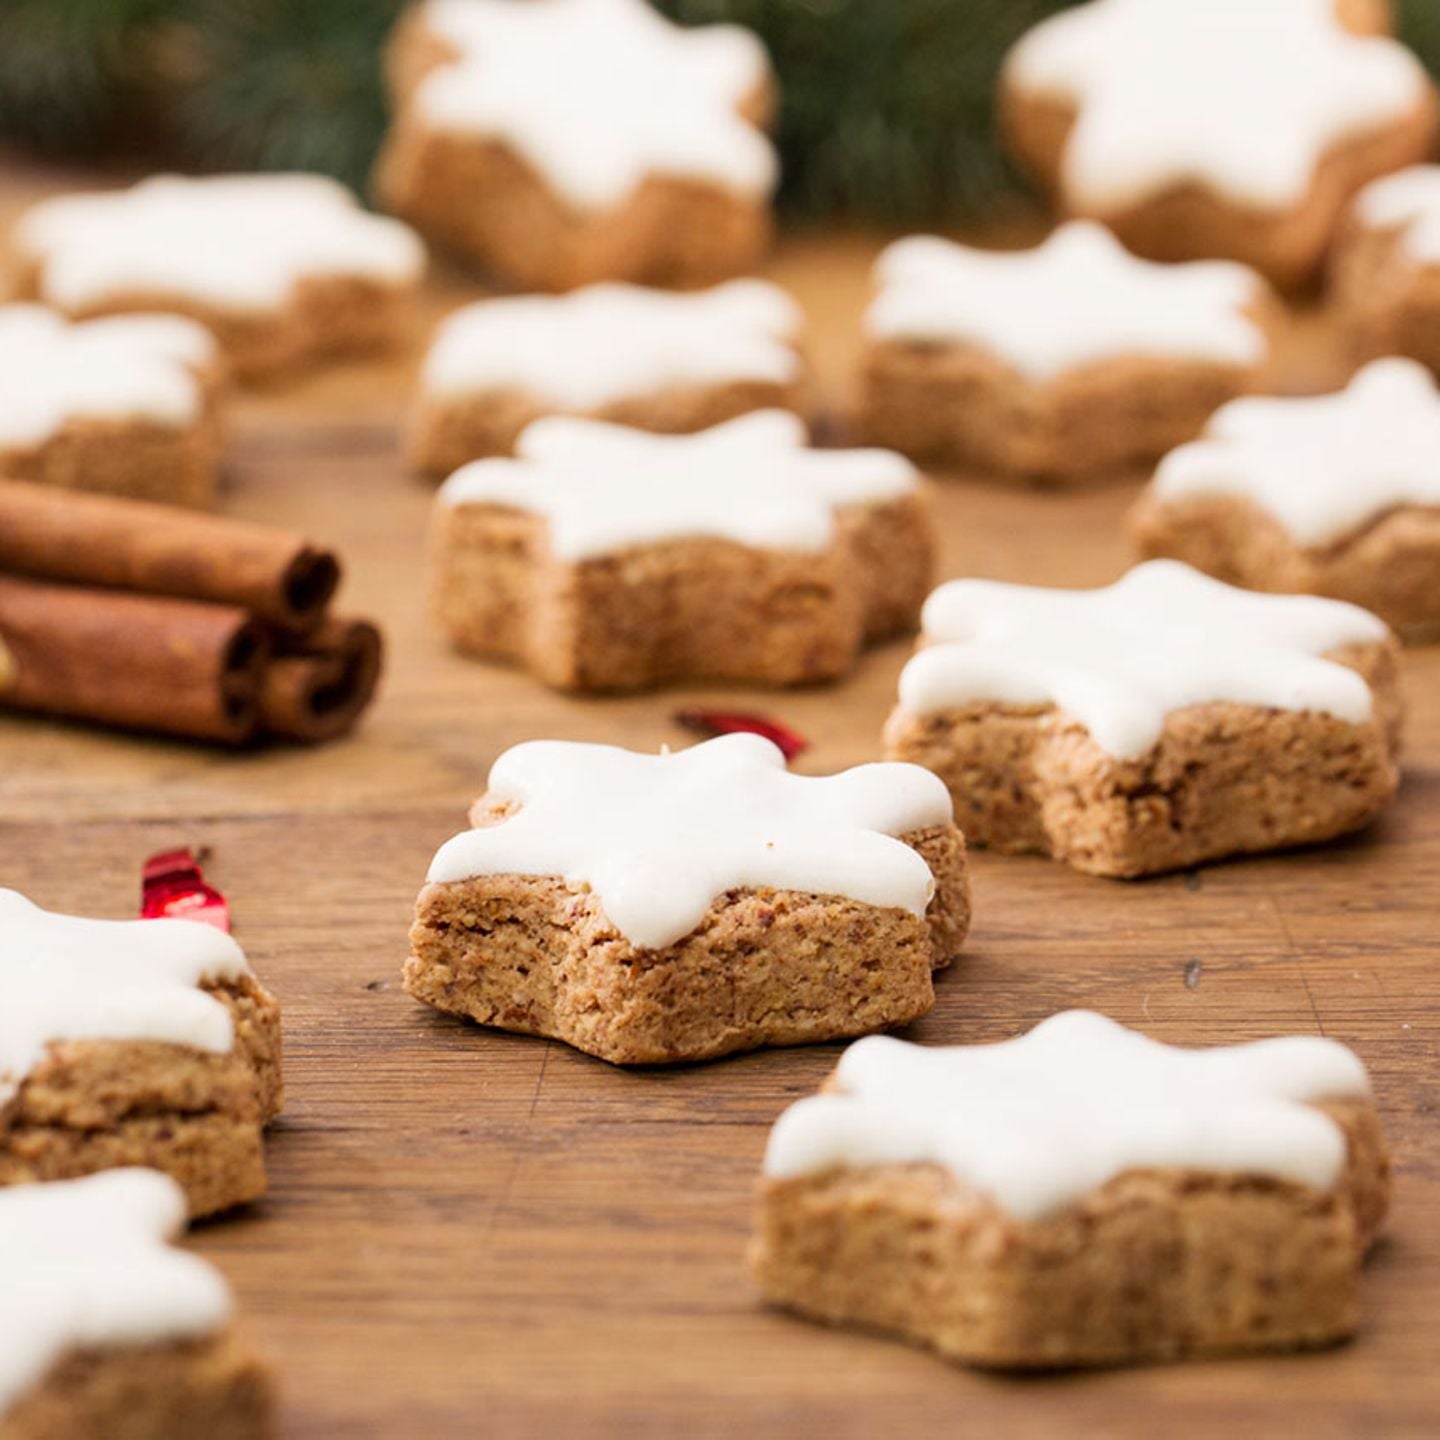 Christmas Baking - Gluten Free Cinnamon Stars